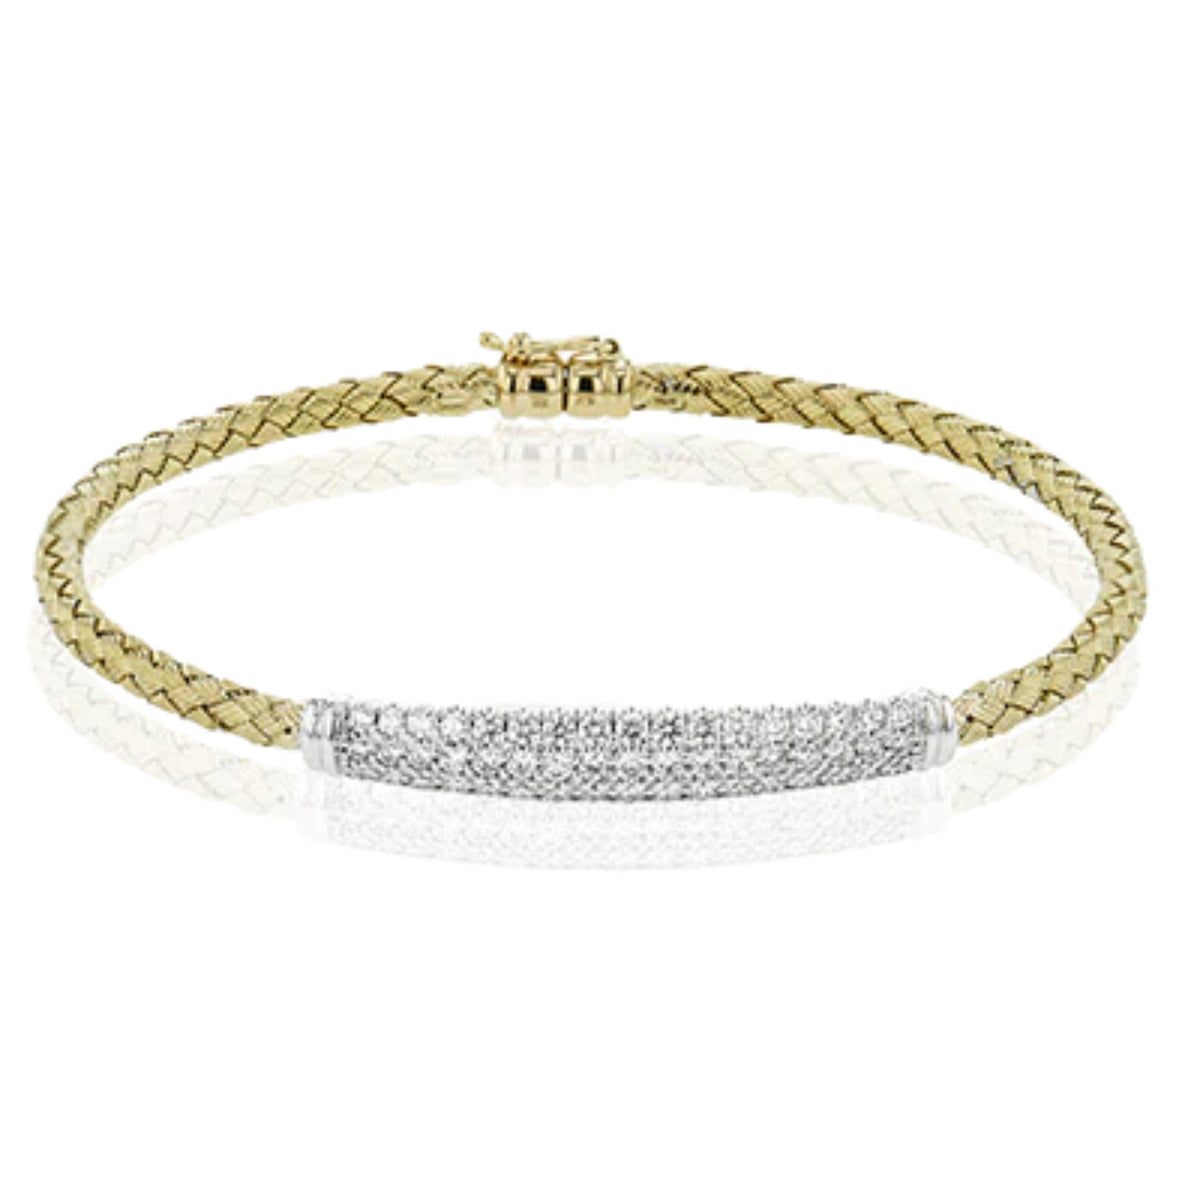 Simon G-18K Yellow Gold Bangle Bracelet with 1.32TW White Diamonds LB2231-Y